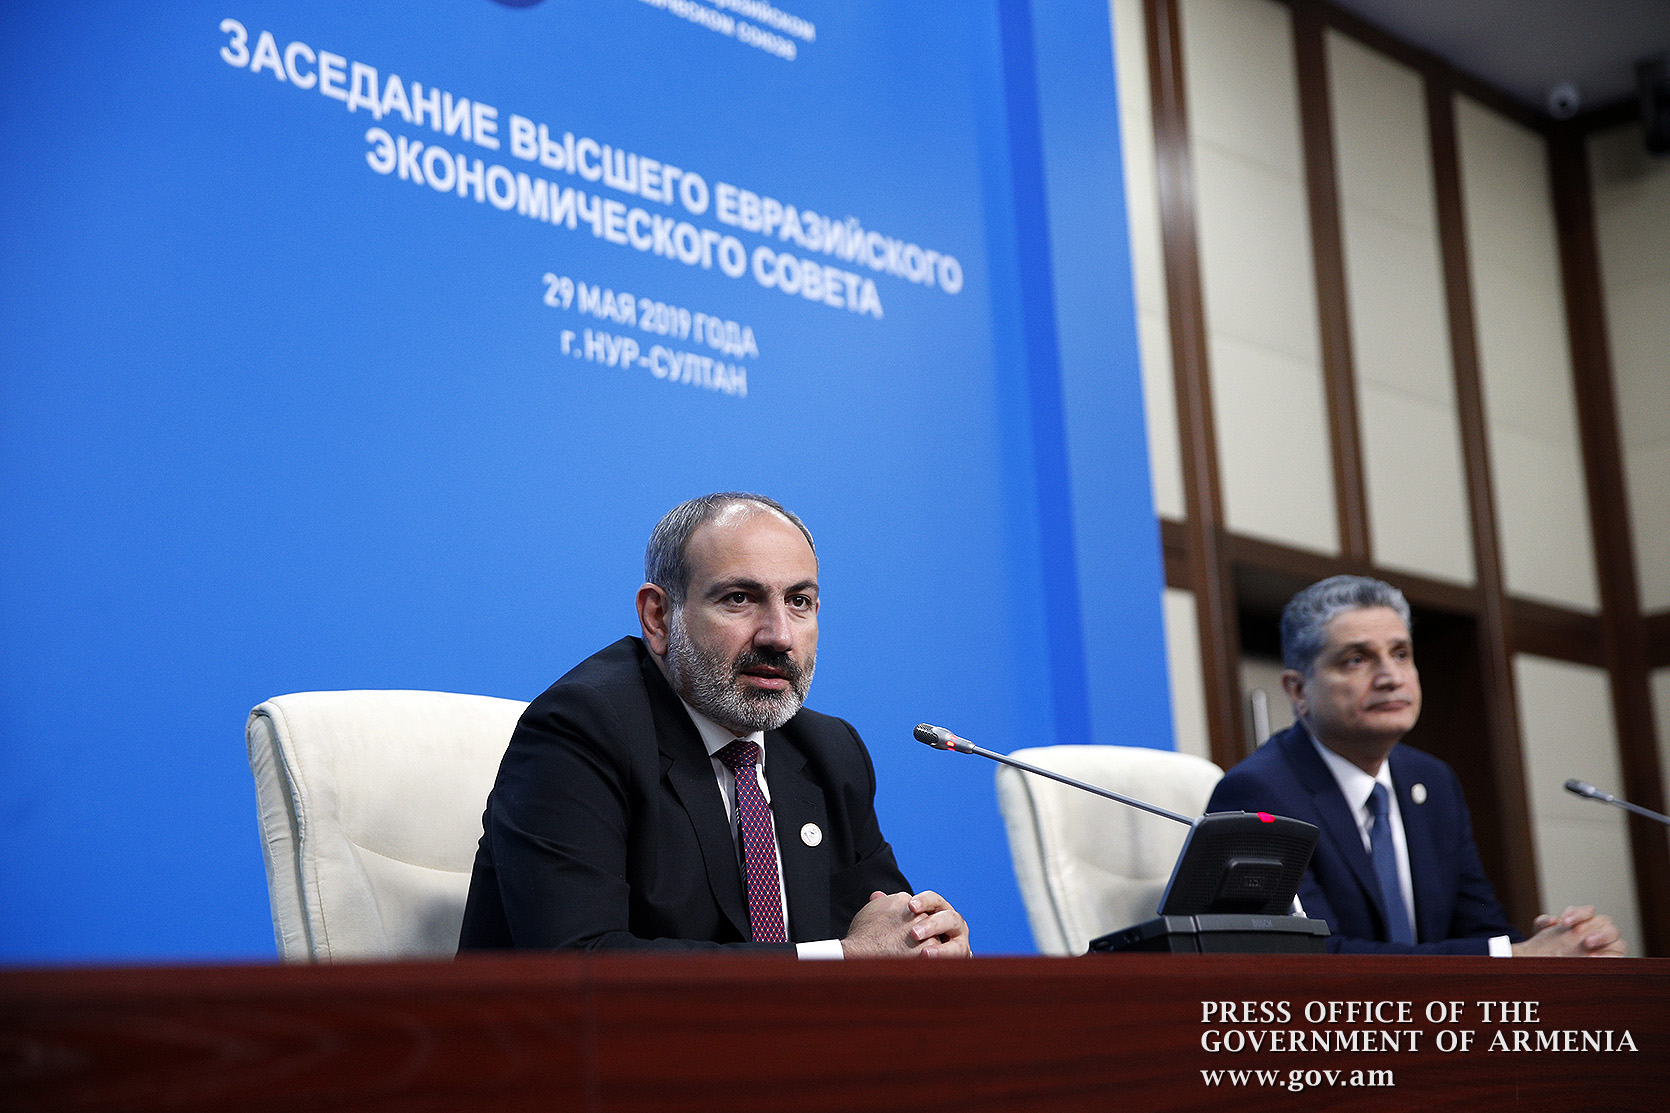 Пашинян в Сколково: премьер Армении прибыл обсудить евразийскую интеграцию